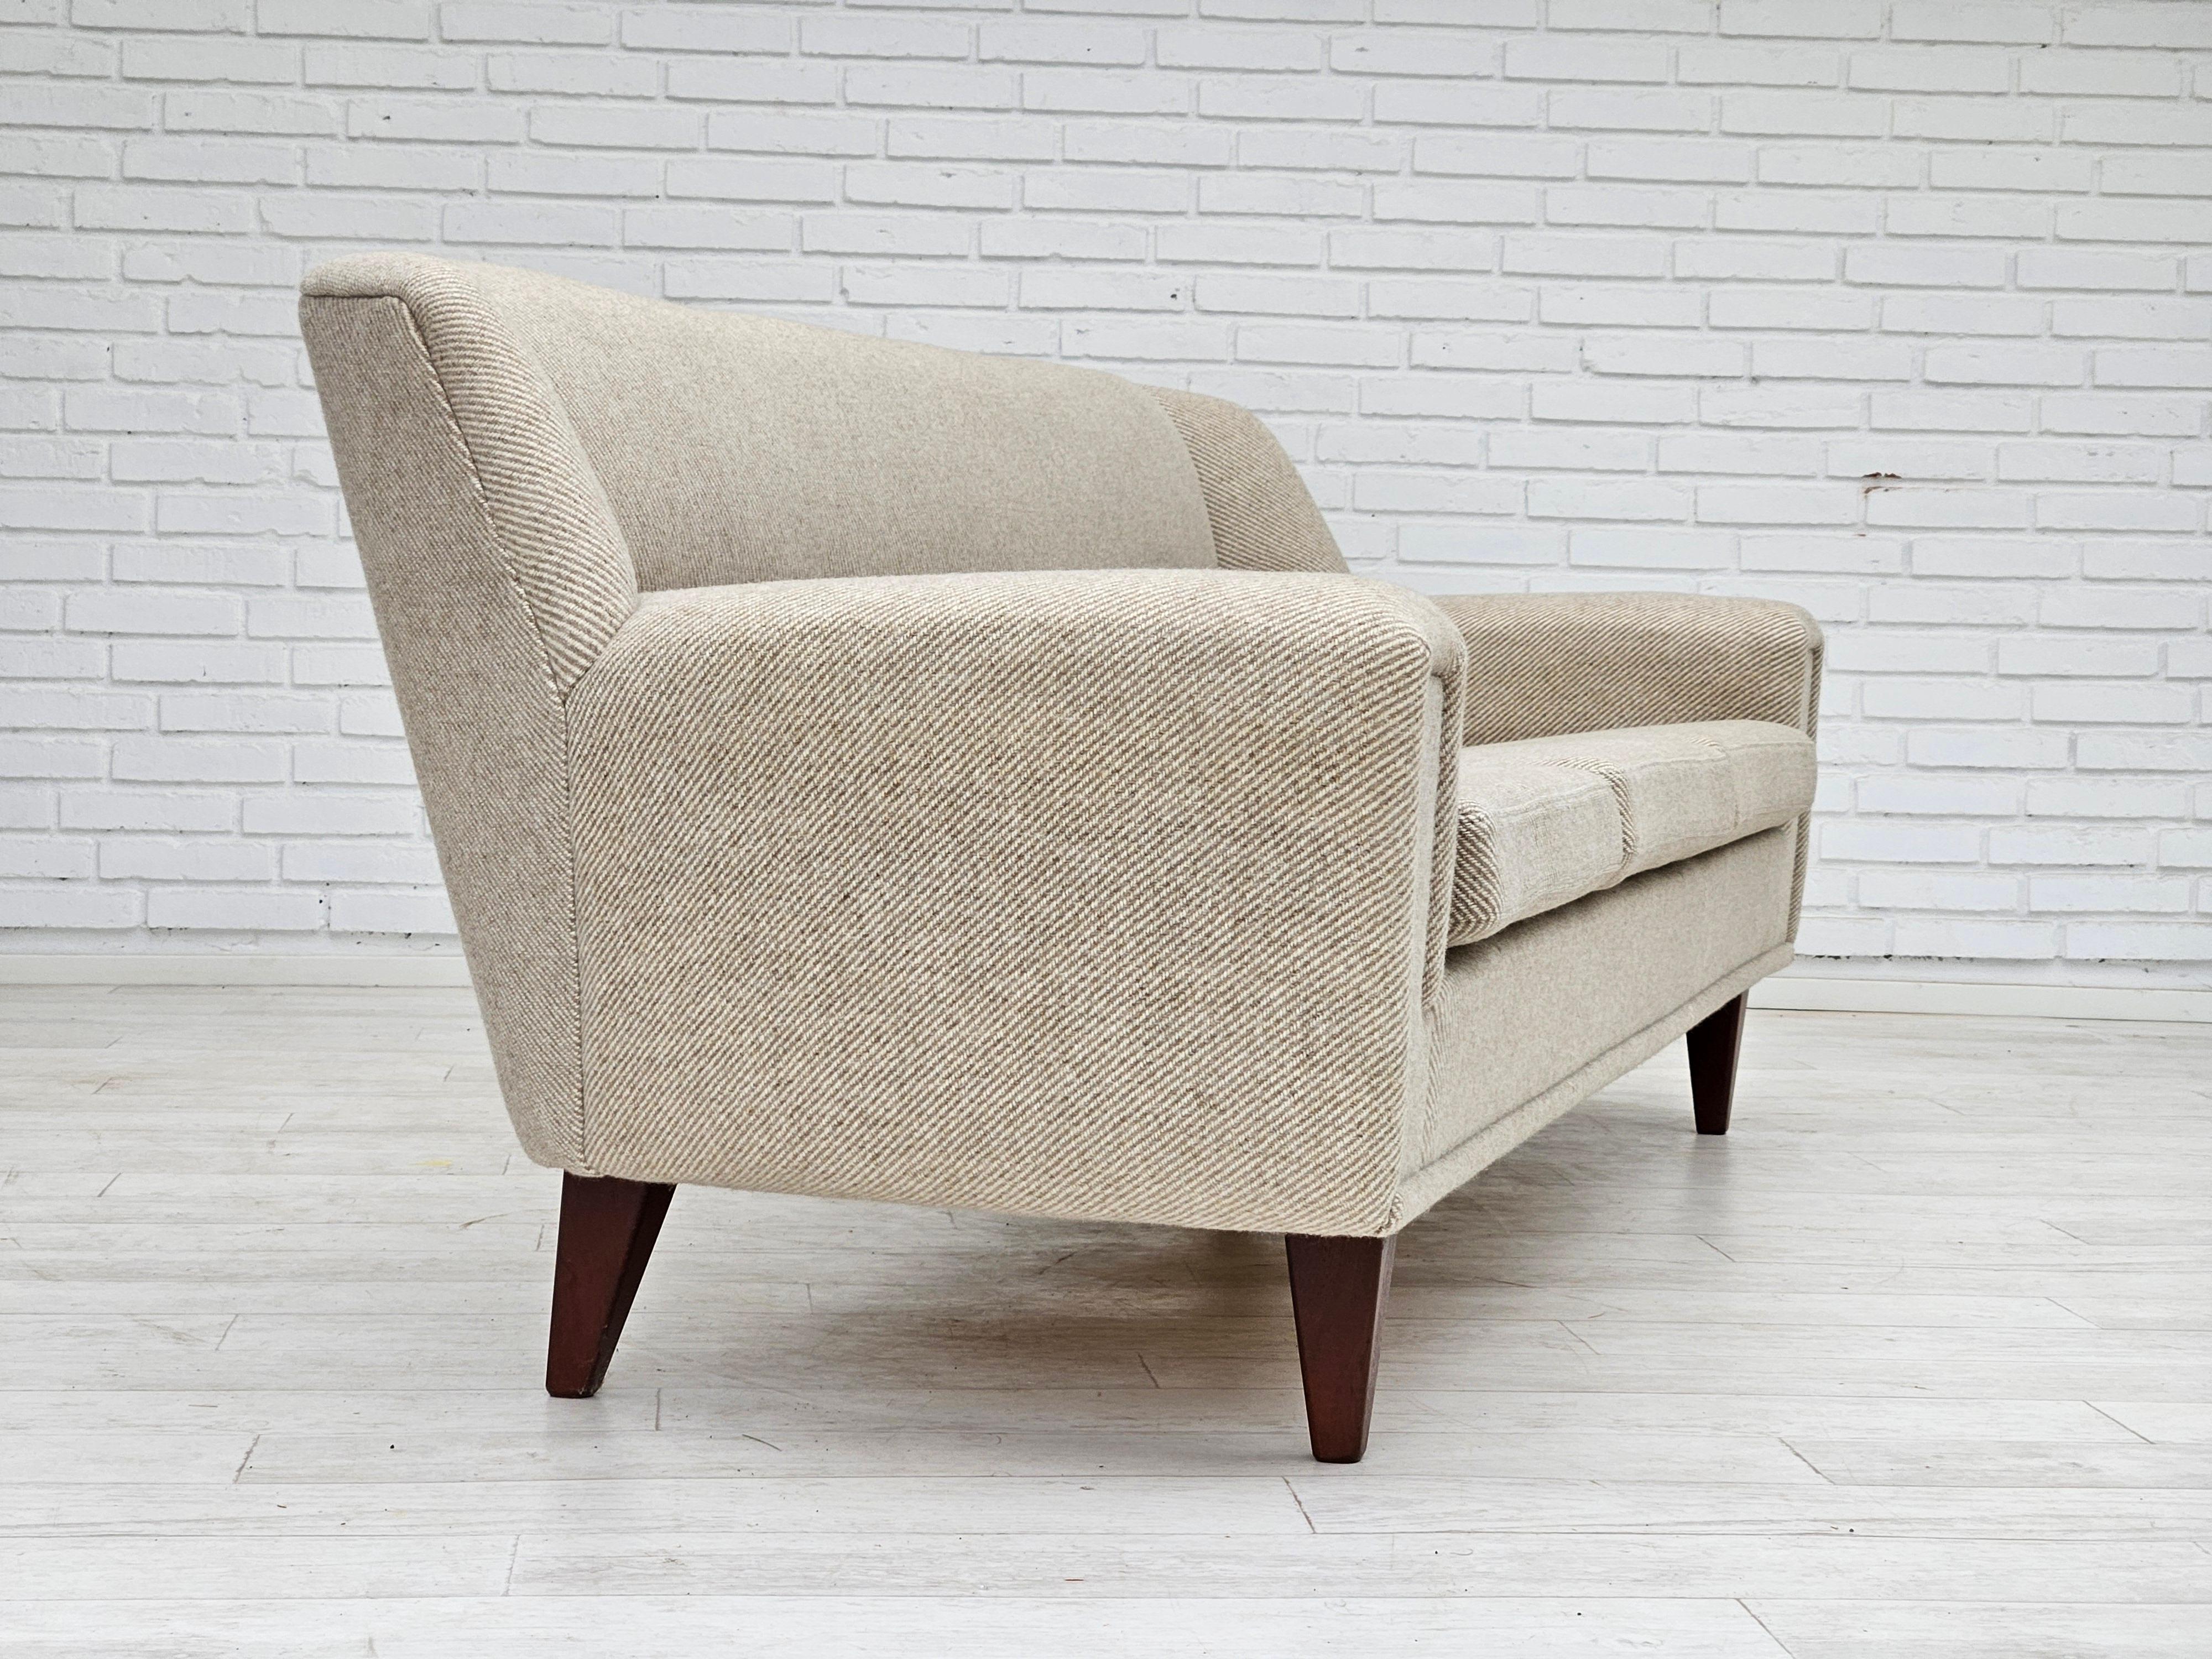 Scandinavian Modern 1960s, Danish design sofa by Kurt Østervig model 61, original good condition.